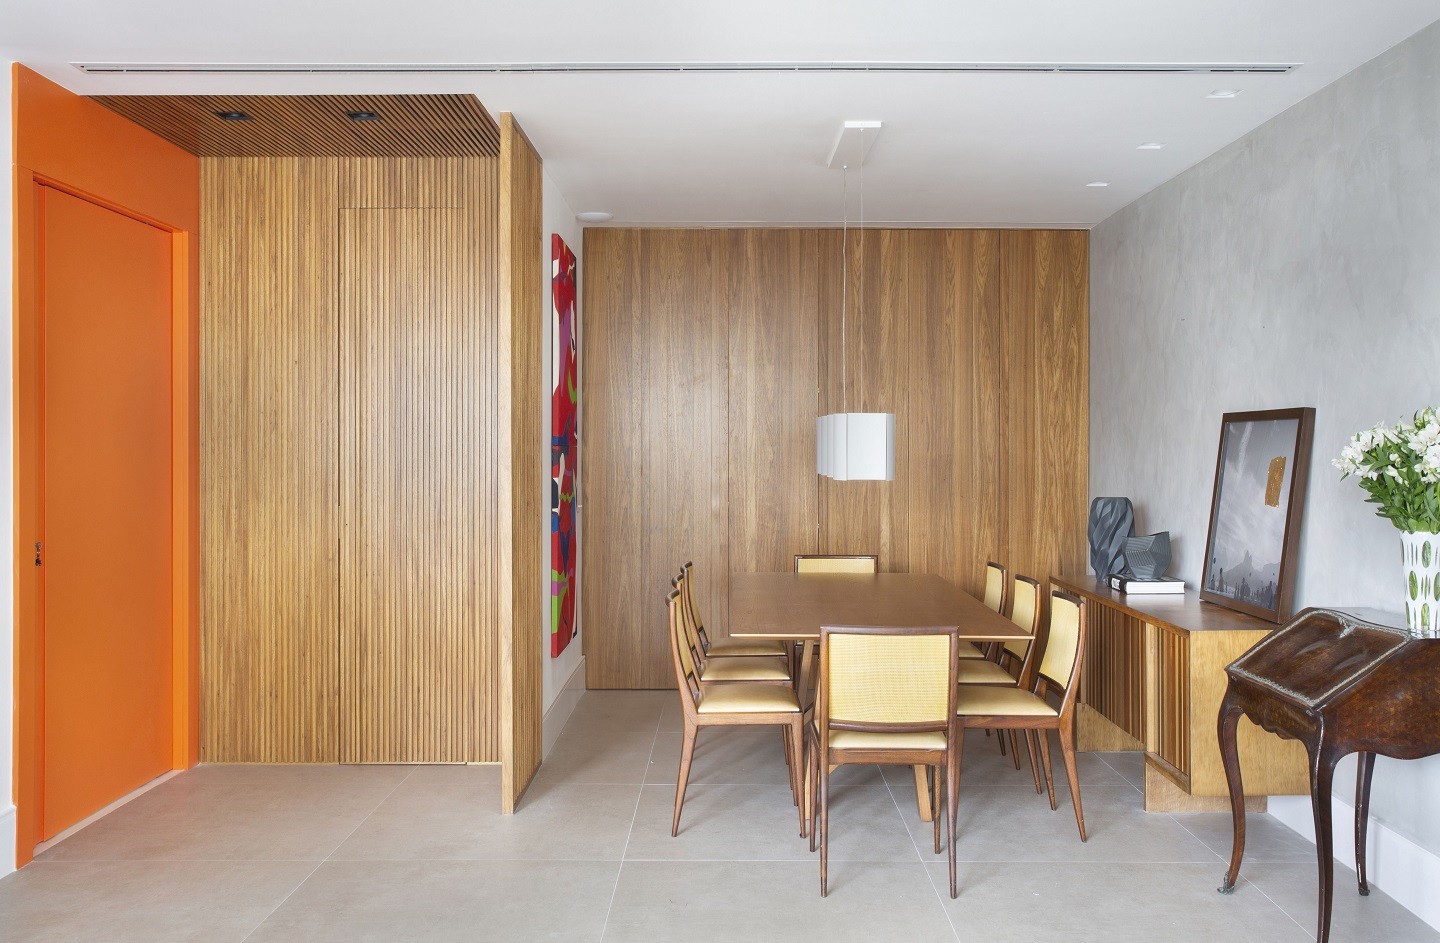 Apê de 150 m² ganha décor contemporâneo marcado por cores vibrantes e madeira (Foto: Juliano Colodeti/MCA Estúdio)